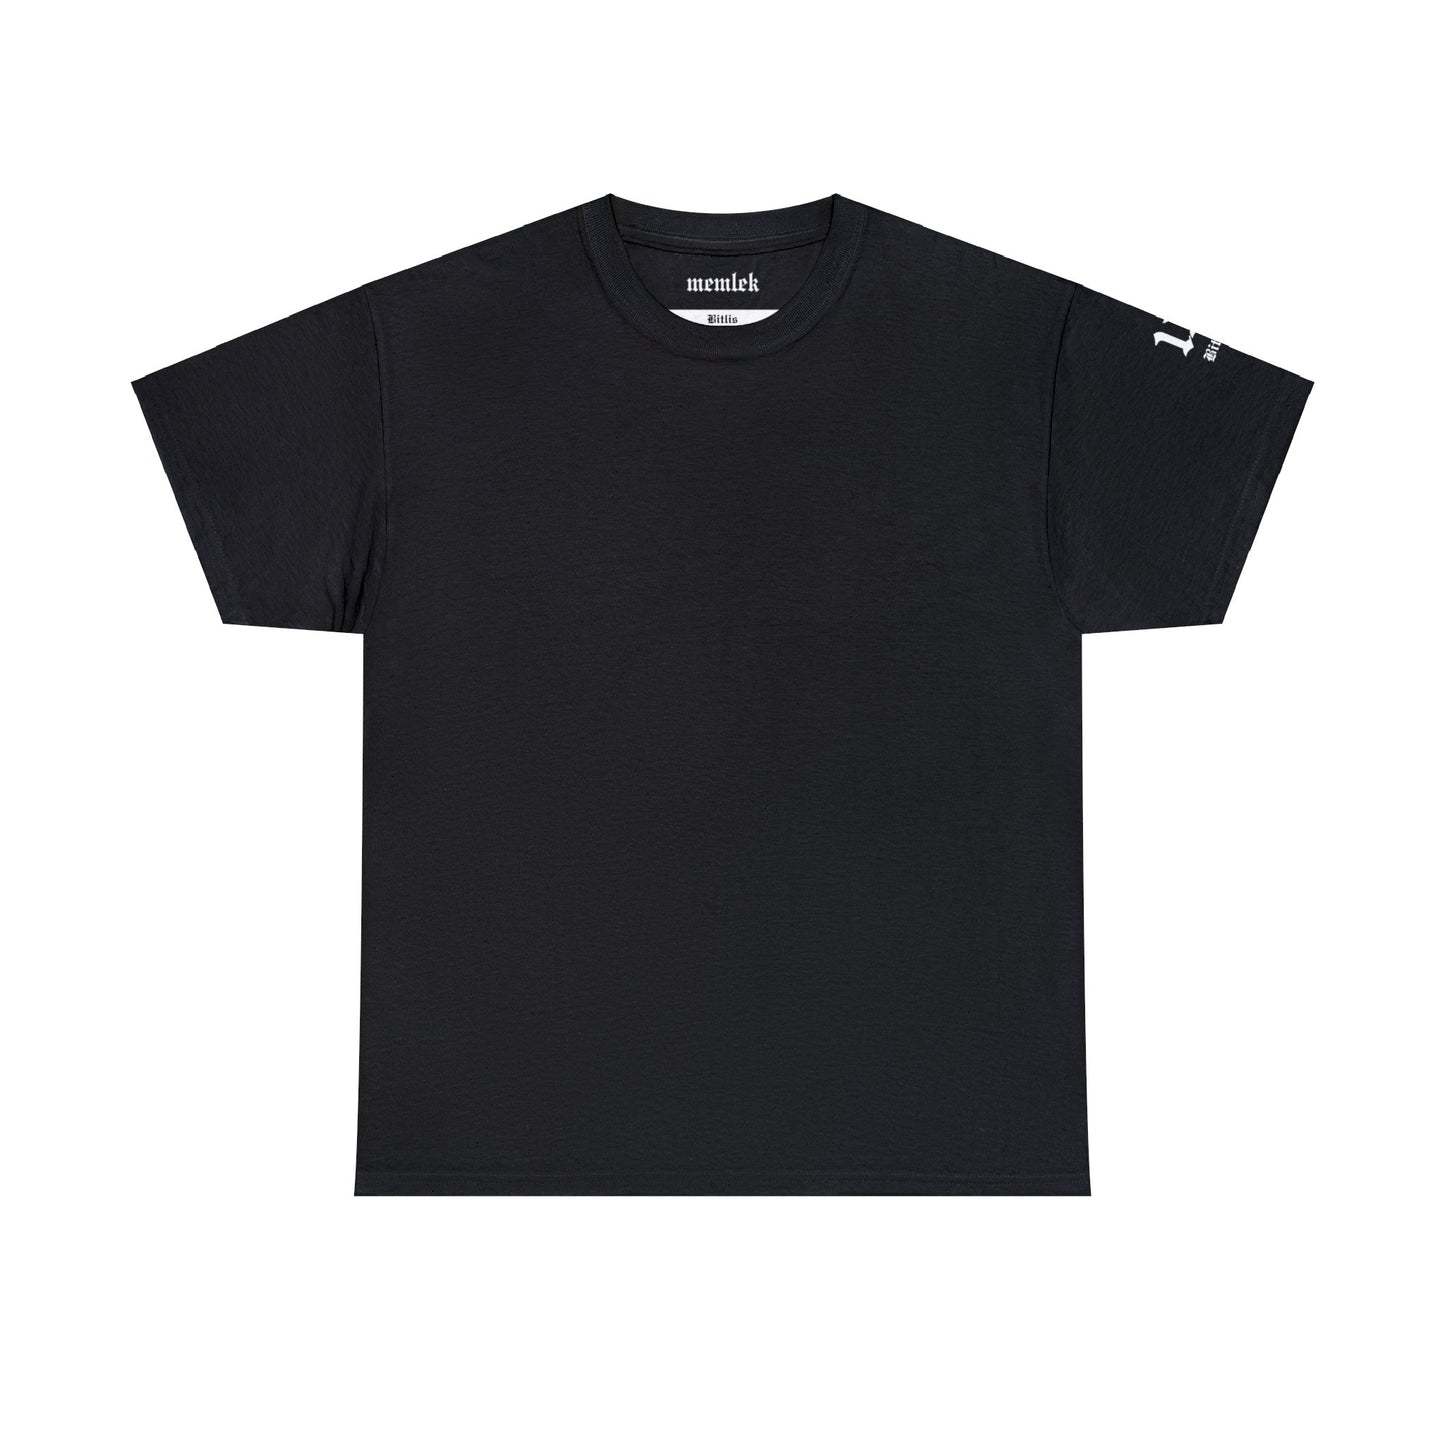 İlçem - 13 Bitlis - T-Shirt - Back Print - Black